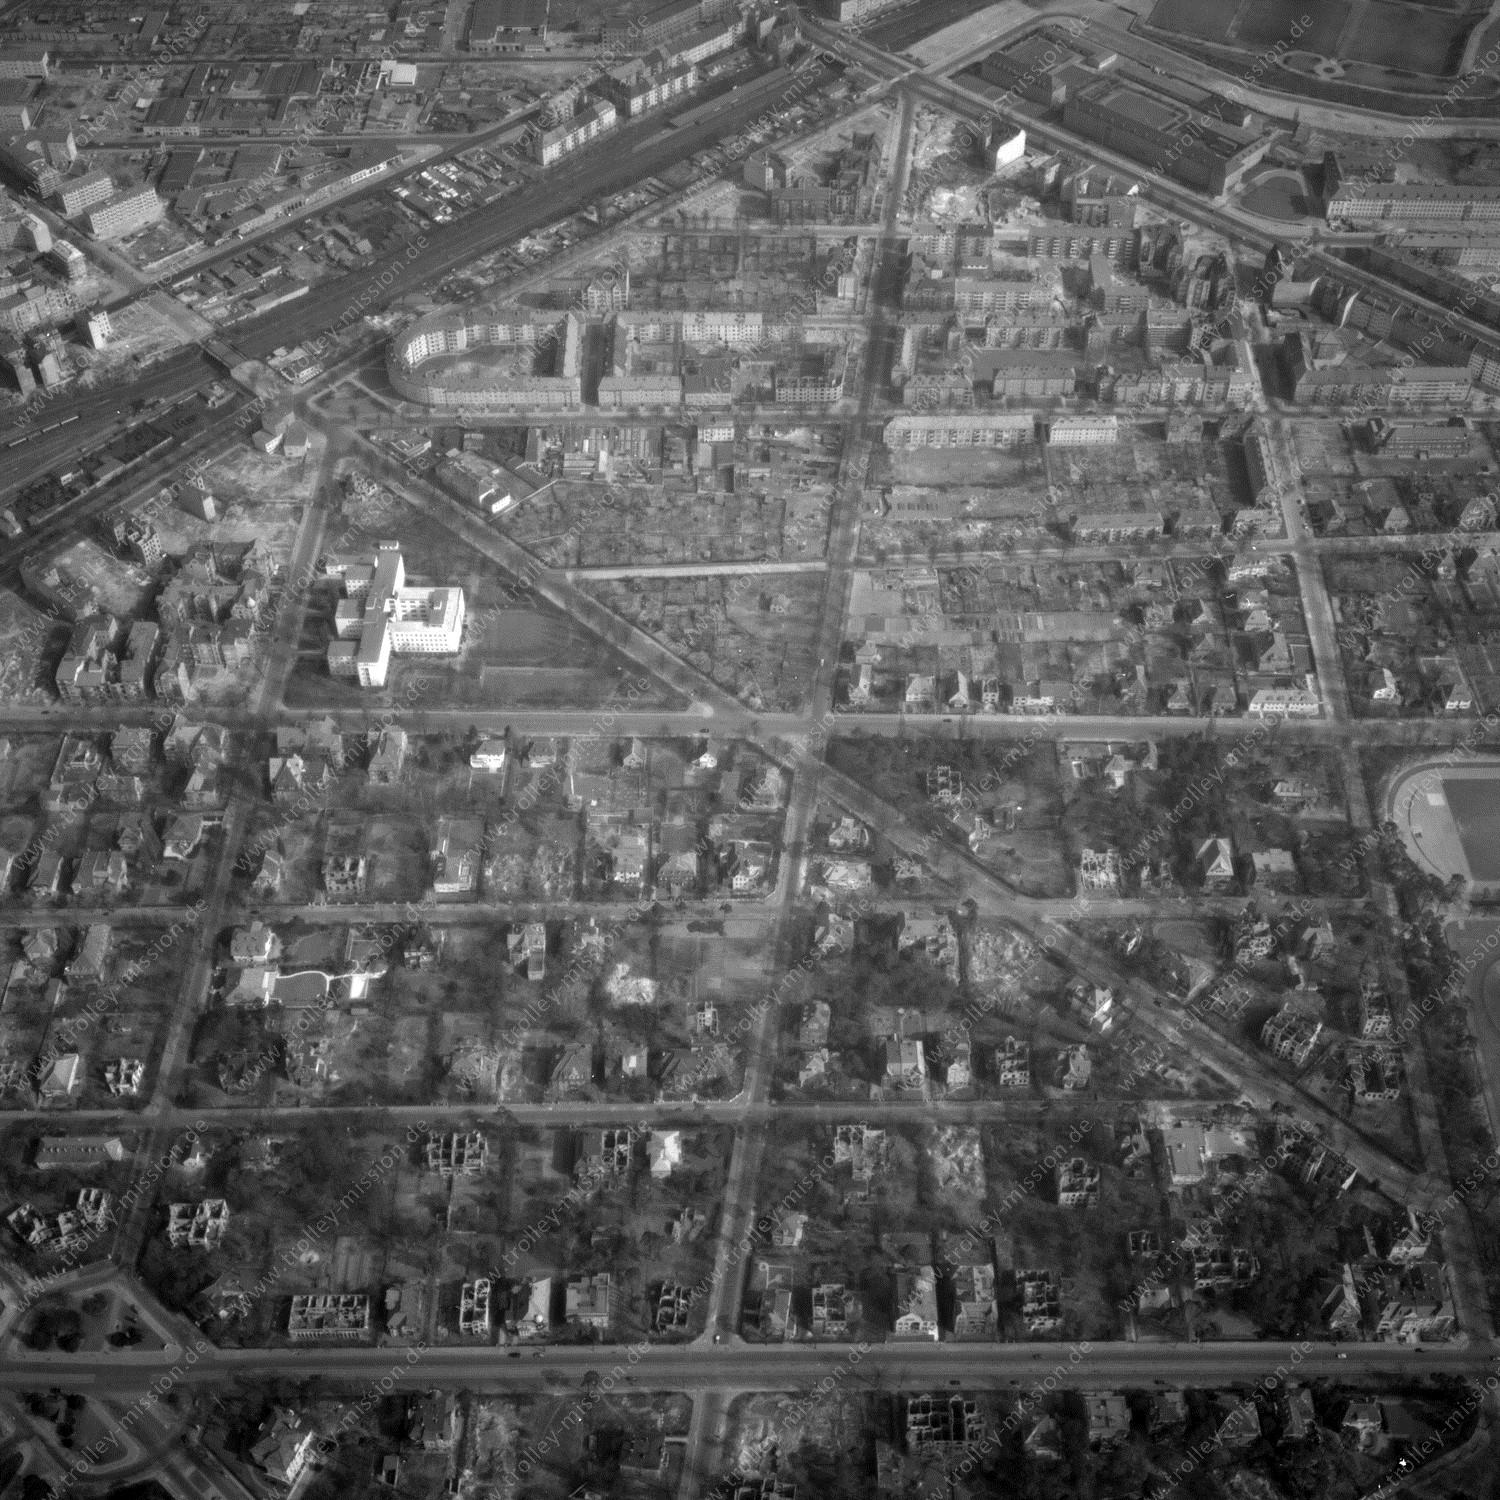 Alte Fotos und Luftbilder von Berlin - Luftbildaufnahme Nr. 05 - Historische Luftaufnahmen von West-Berlin aus dem Jahr 1954 - Flugstrecke Alpha